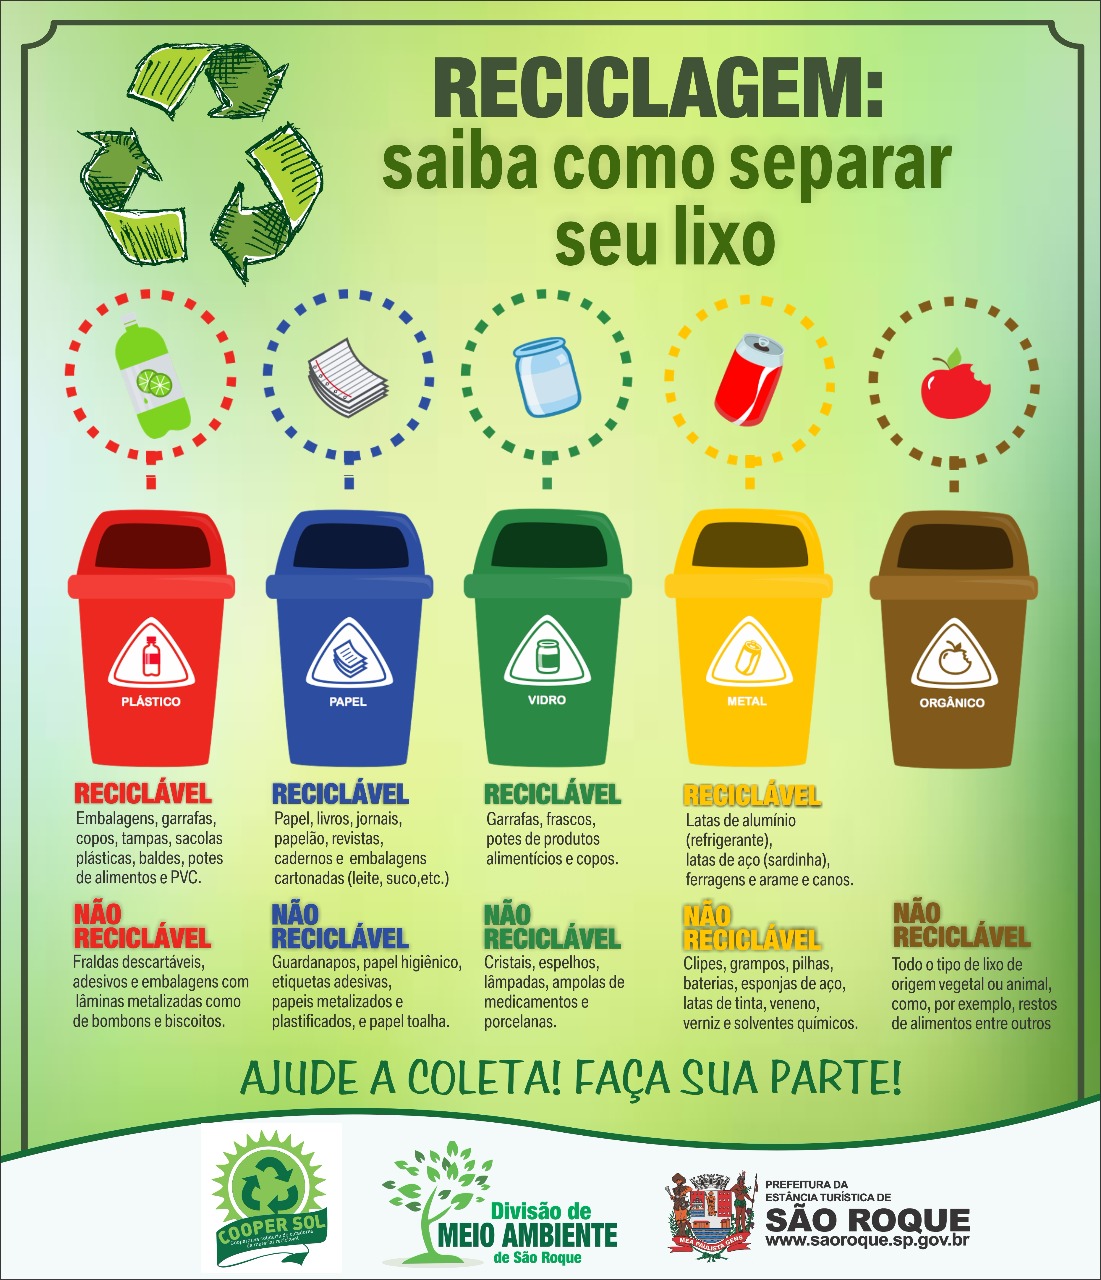 Perguntas sobre os materiais recicláveis - Coleta seletiva